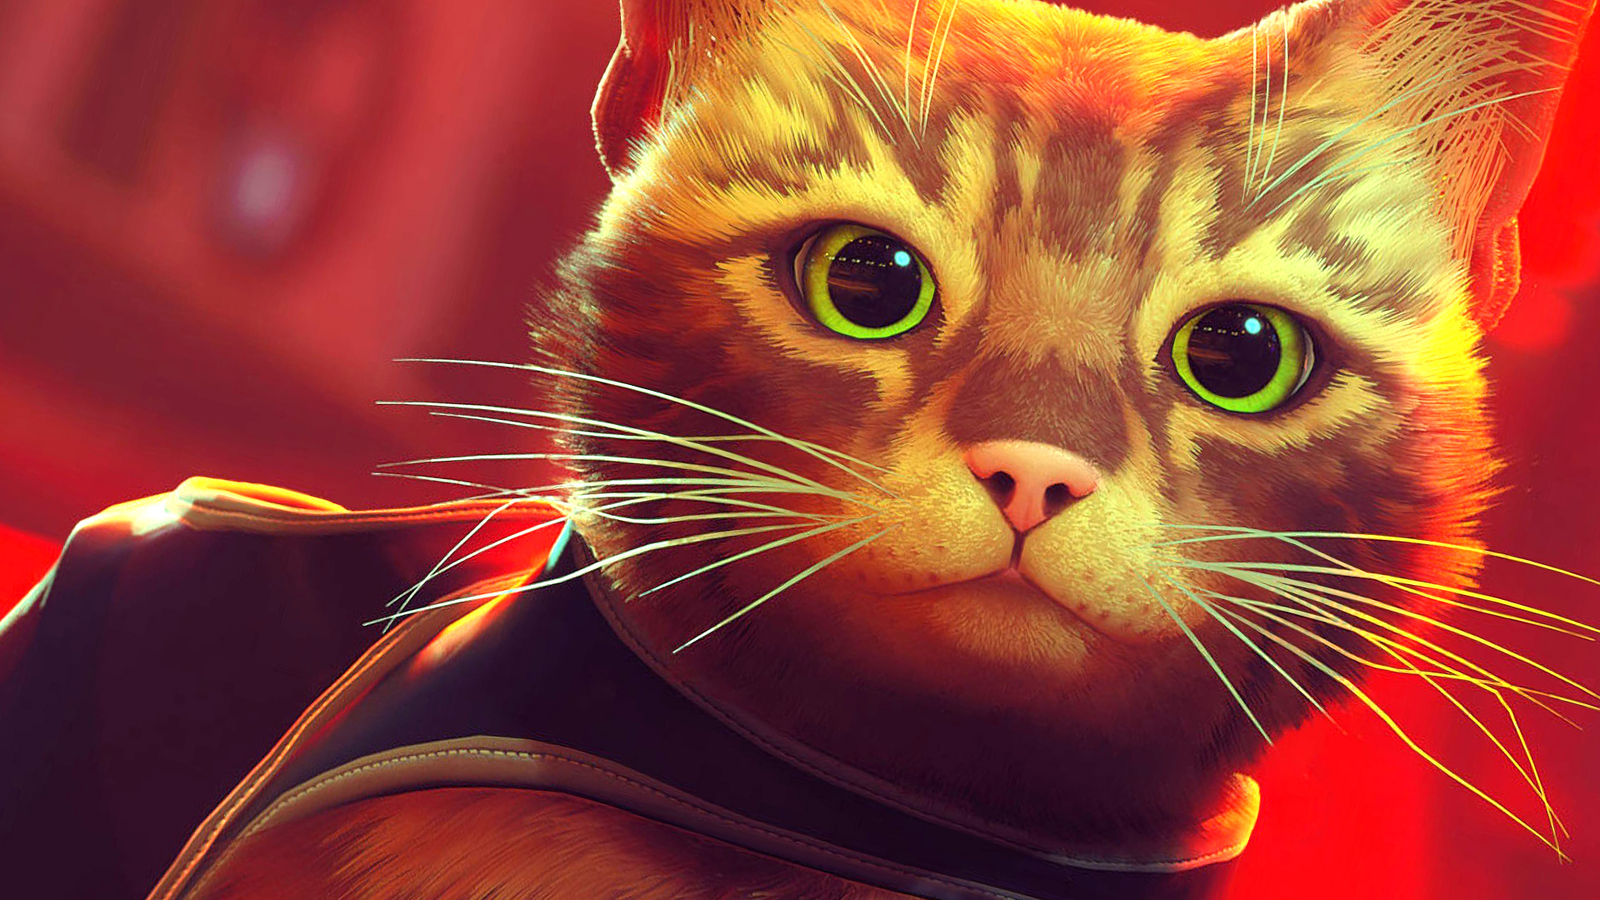 Stray, o jogo do gatinho, pode estar chegando em breve ao Xbox